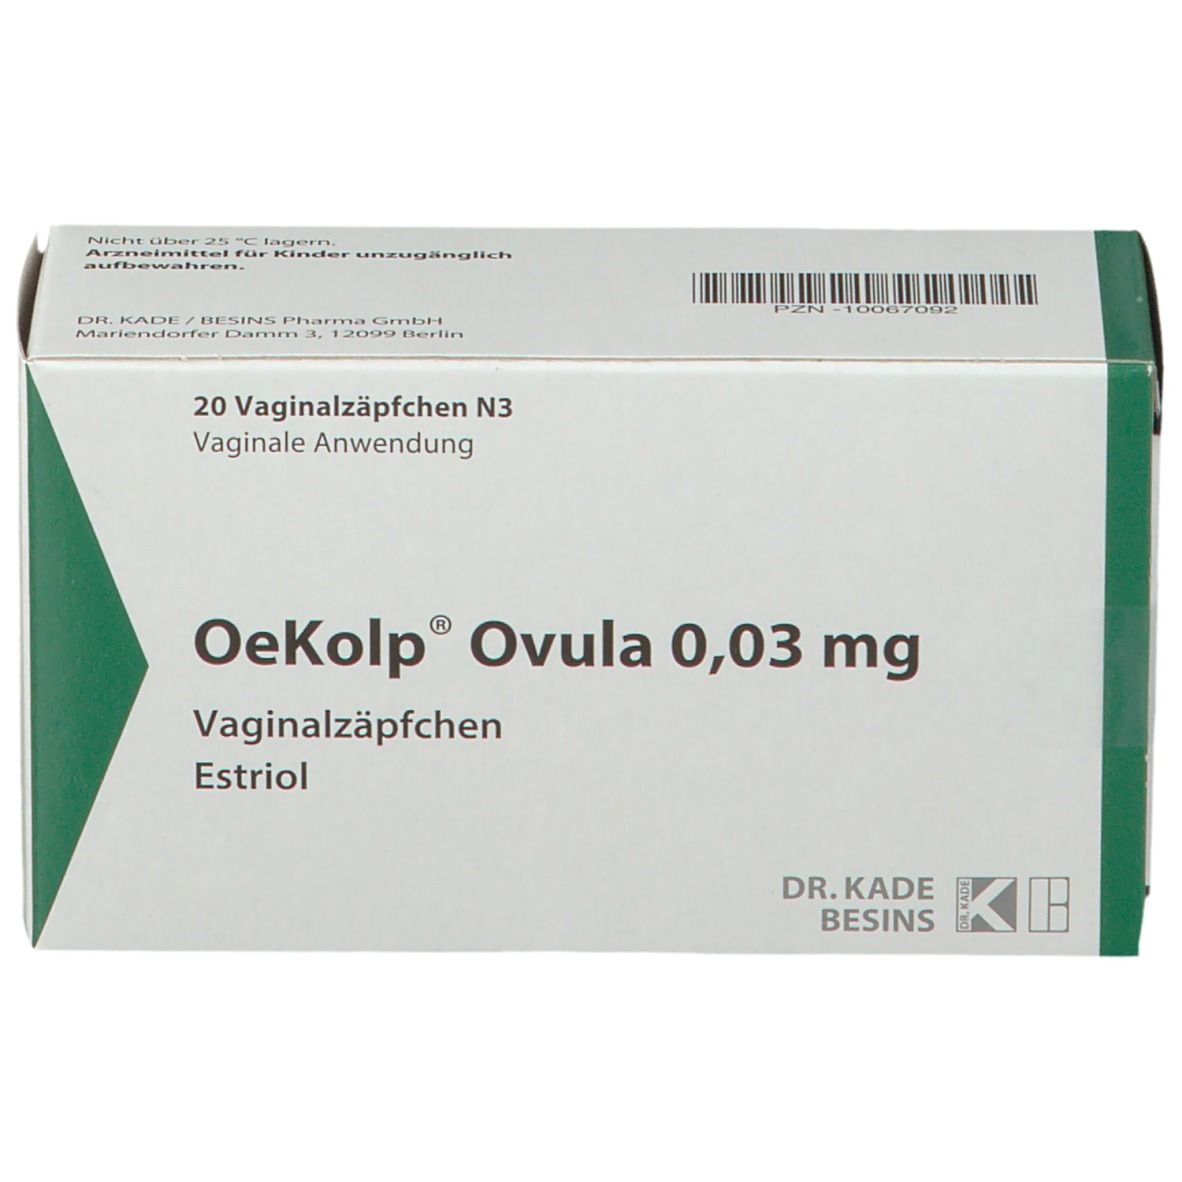 OeKolp® Ovula 0,03 mg